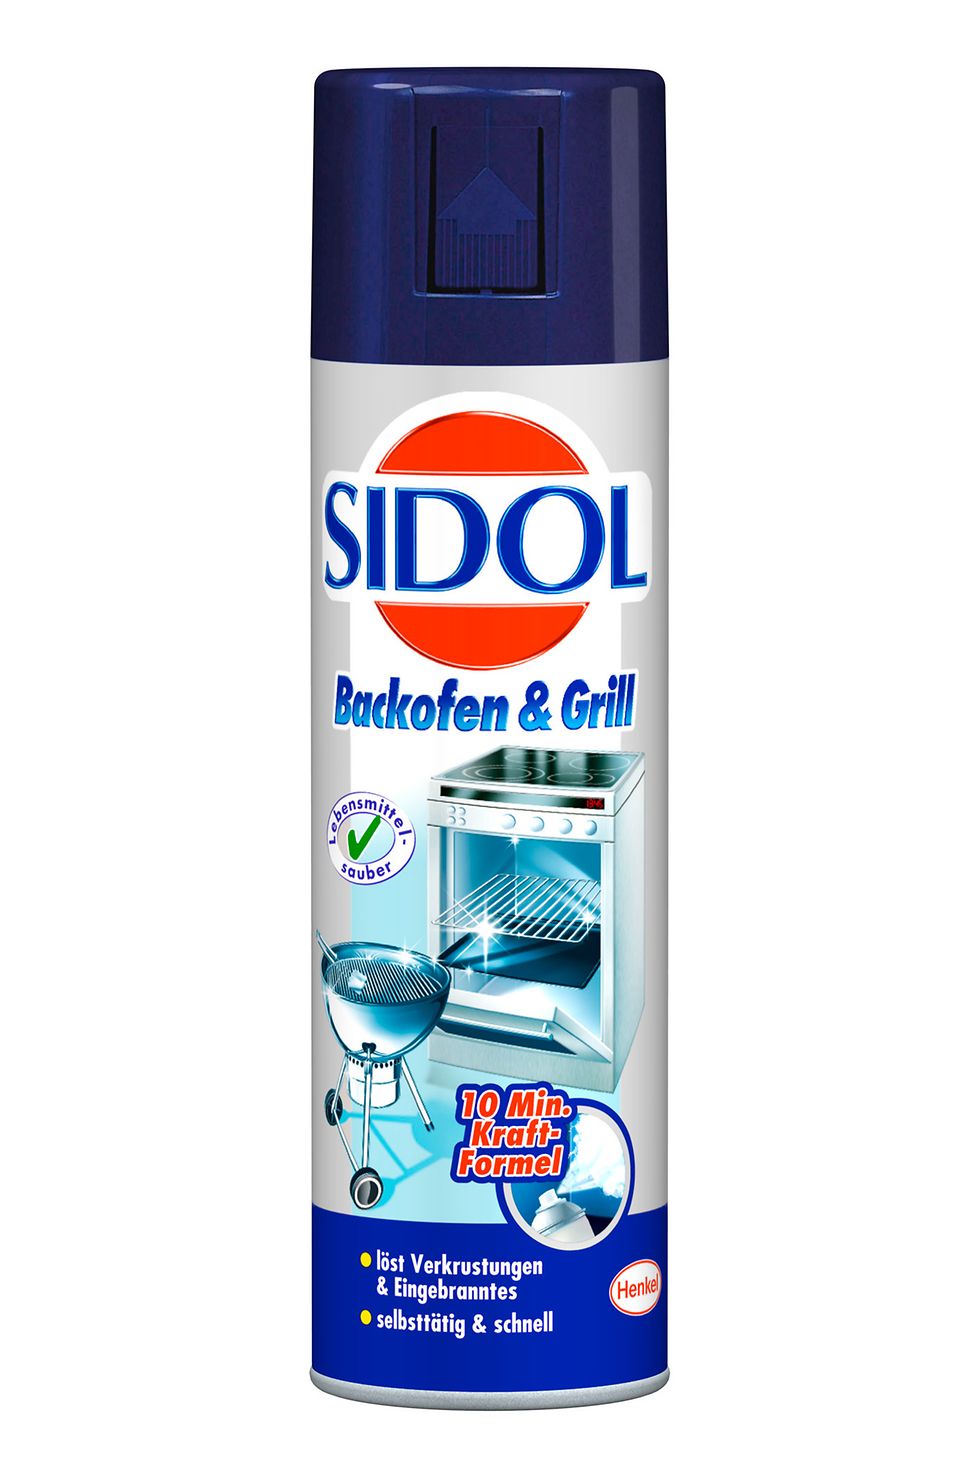 Sidol Backofen & Grill